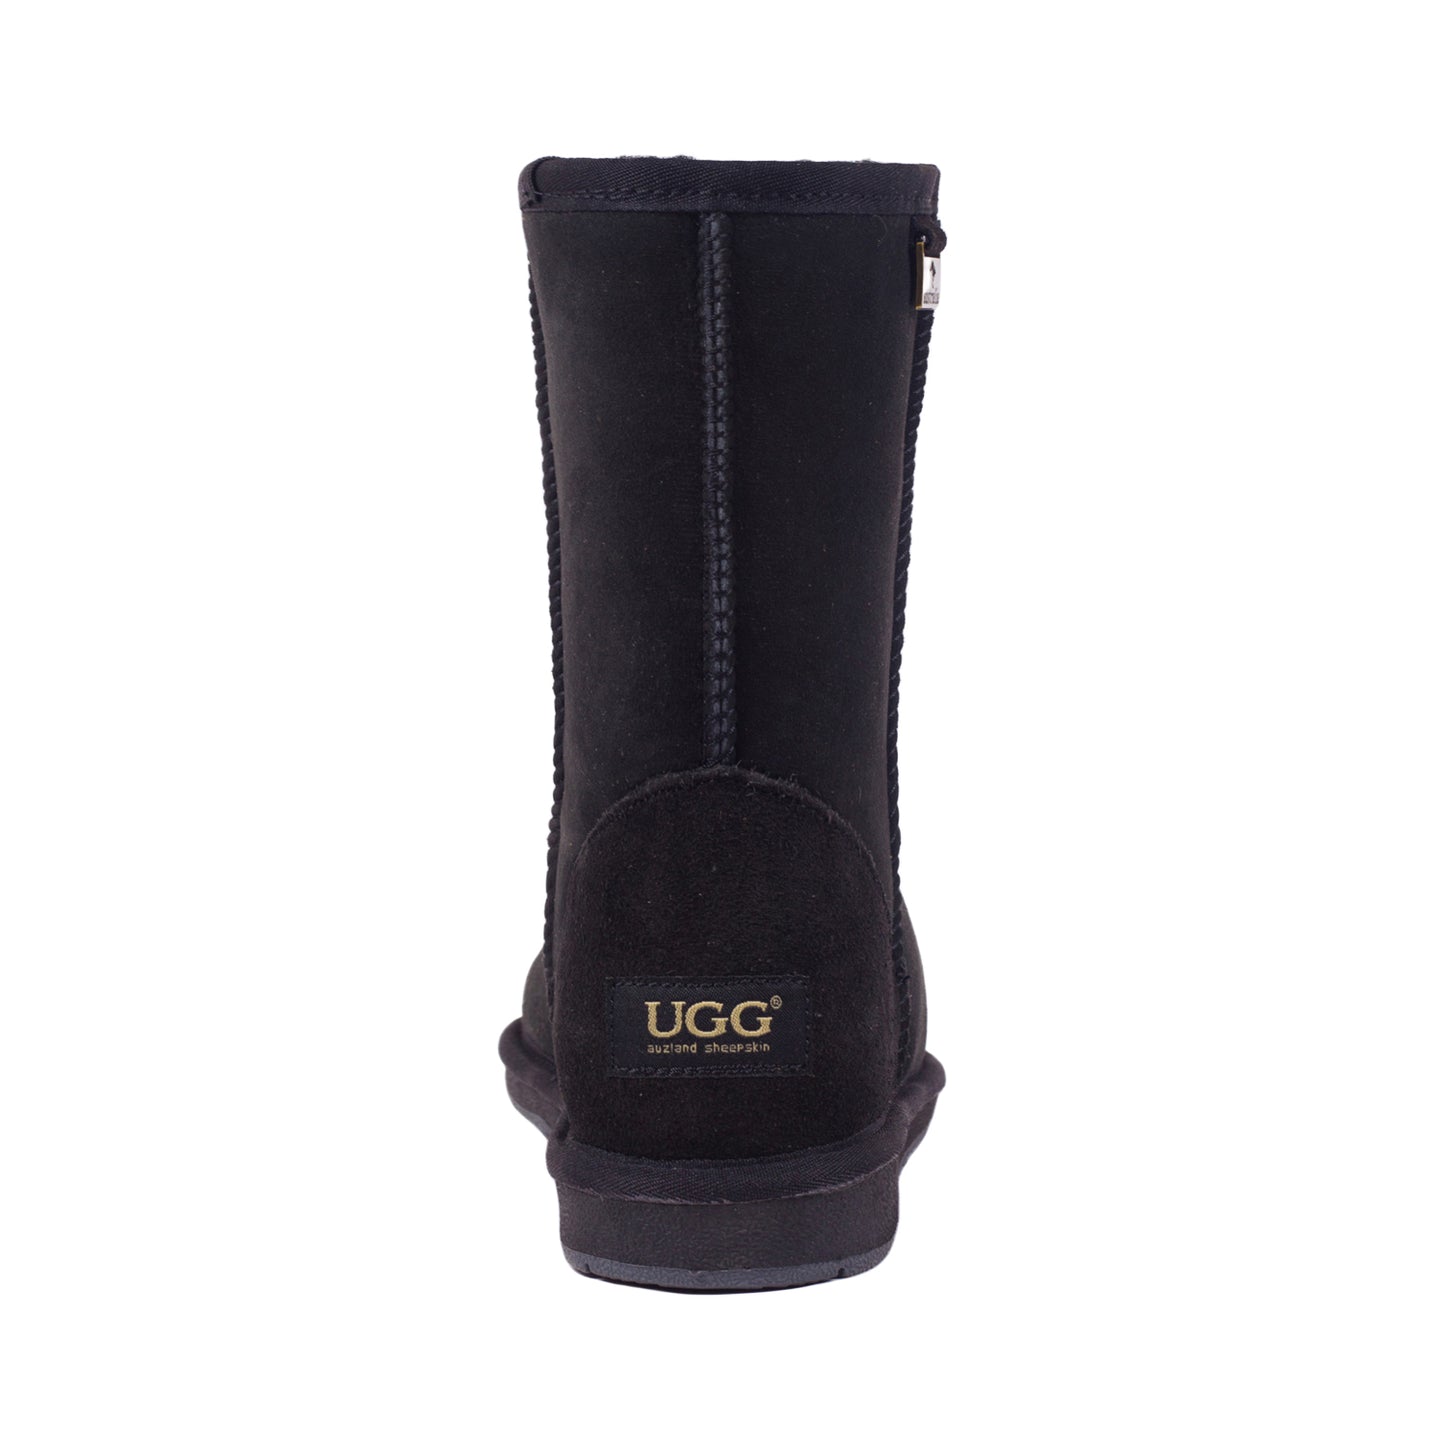 UGG Premium Suede Short Classic Boots